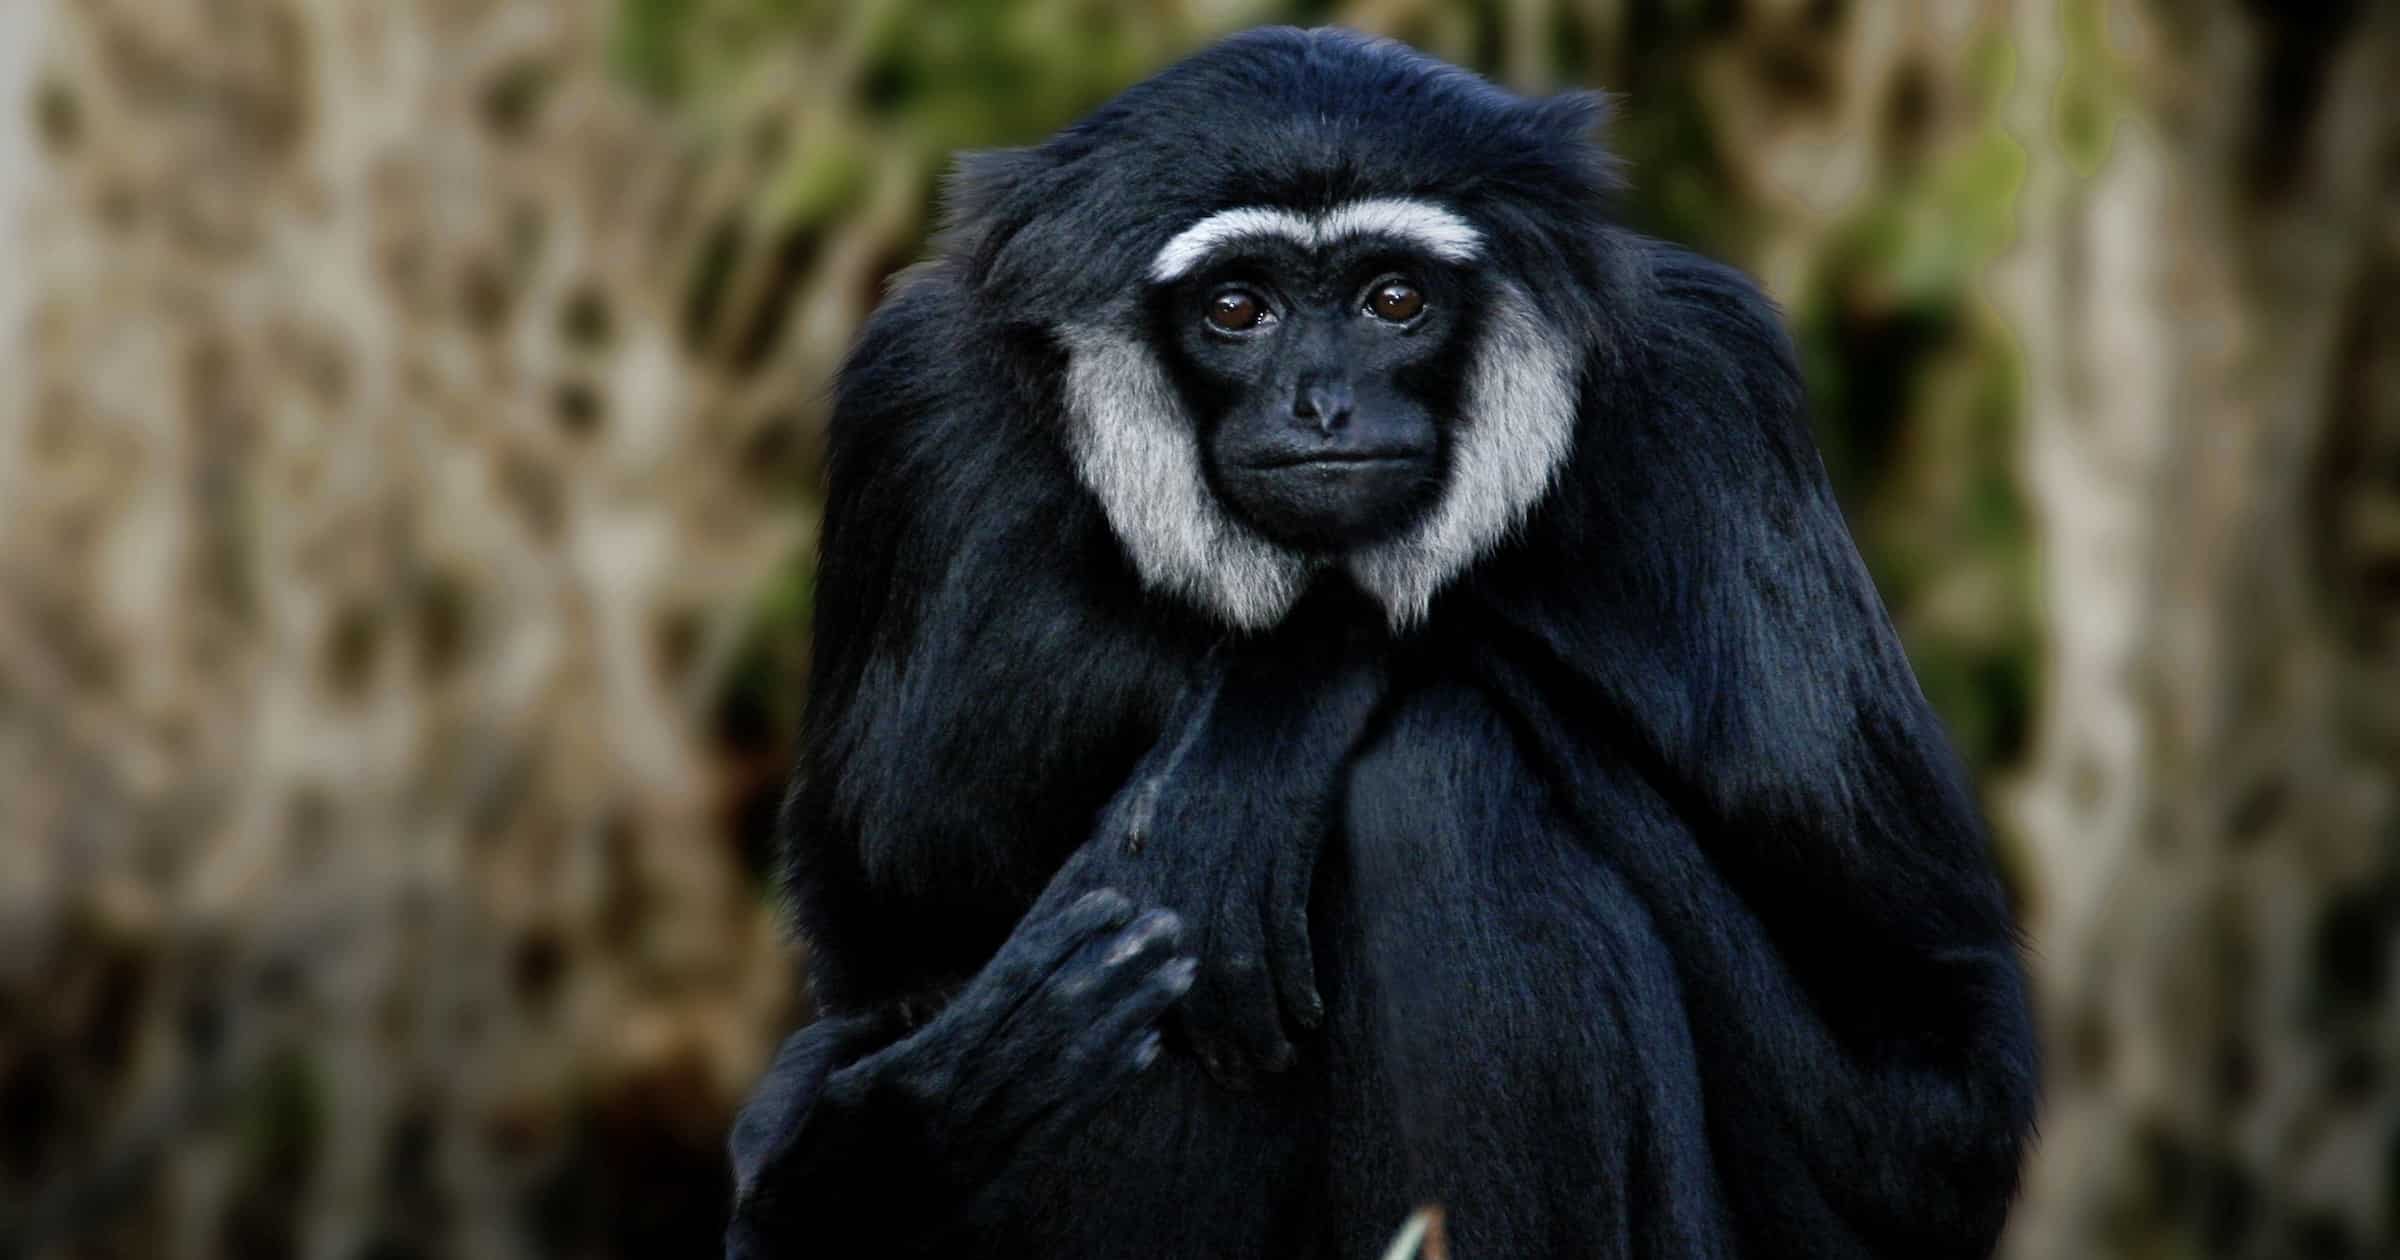 Gibbon-ape